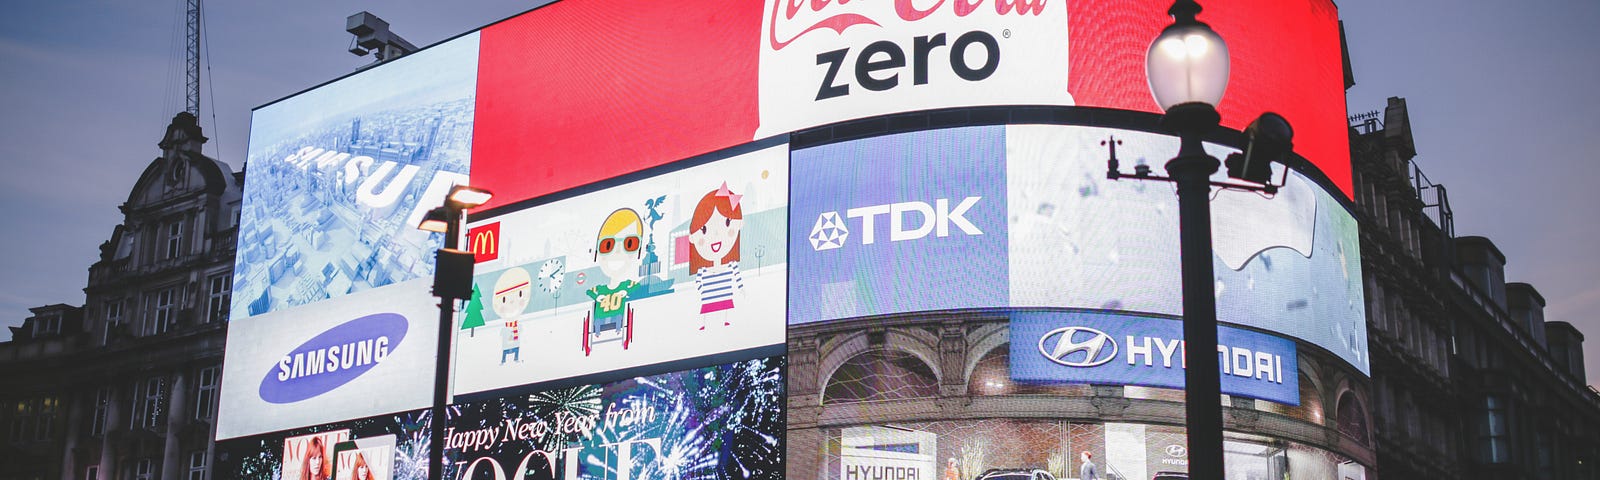 A foto apresenta uma esquina com diversas placas com marcas como Coca-Cola, TDK entre outras